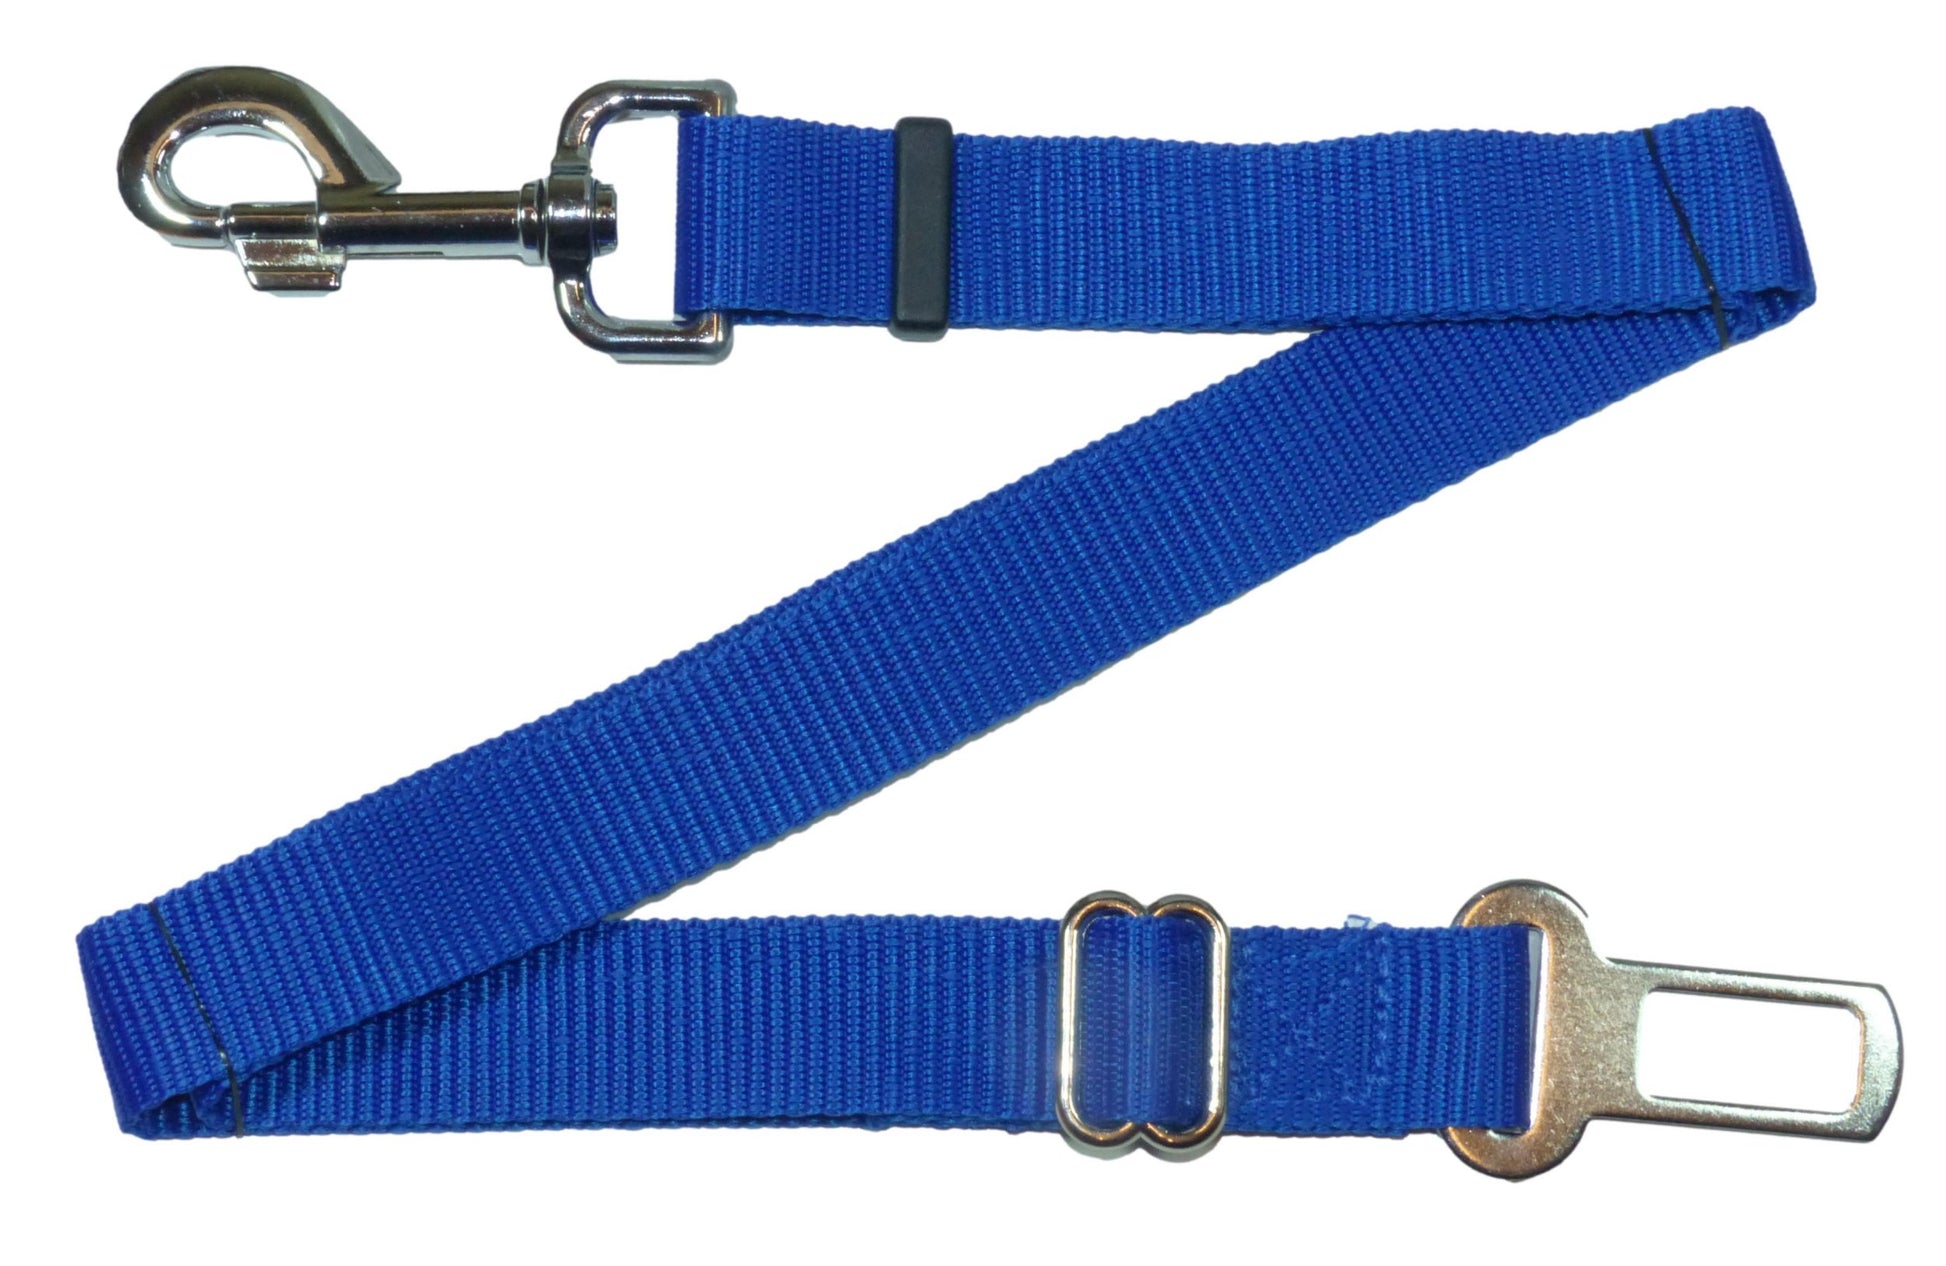 Benristraps Adjustable Cat & Dog Pet Safety Strap for Car Seat Belt in Blue